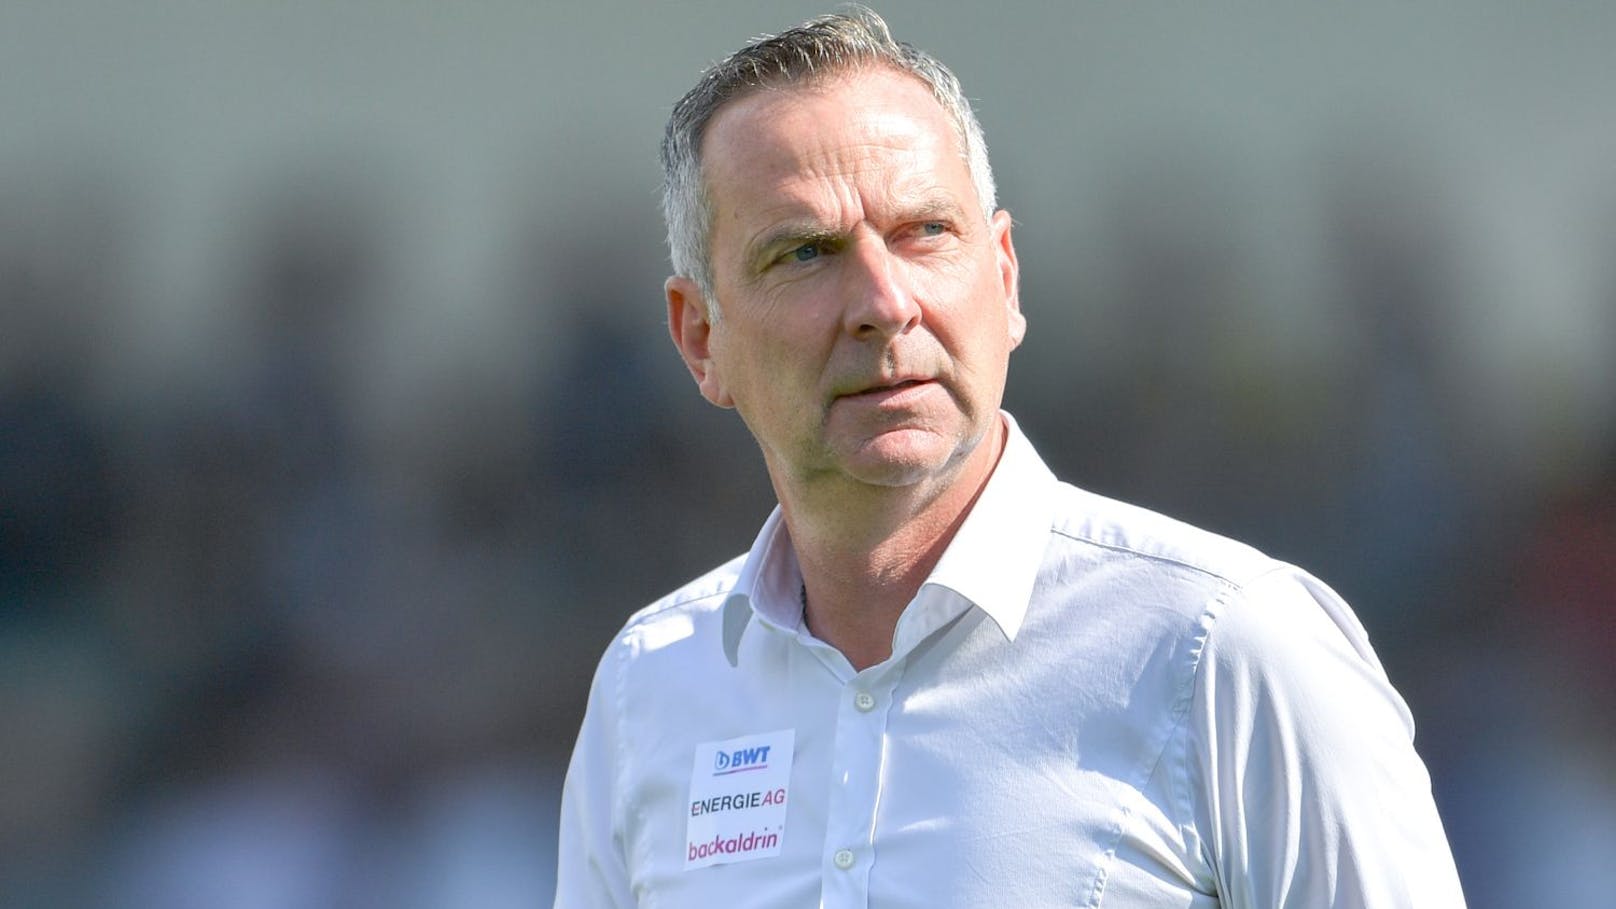 Kuriose Regel kostete Österreich-Coach England-Job